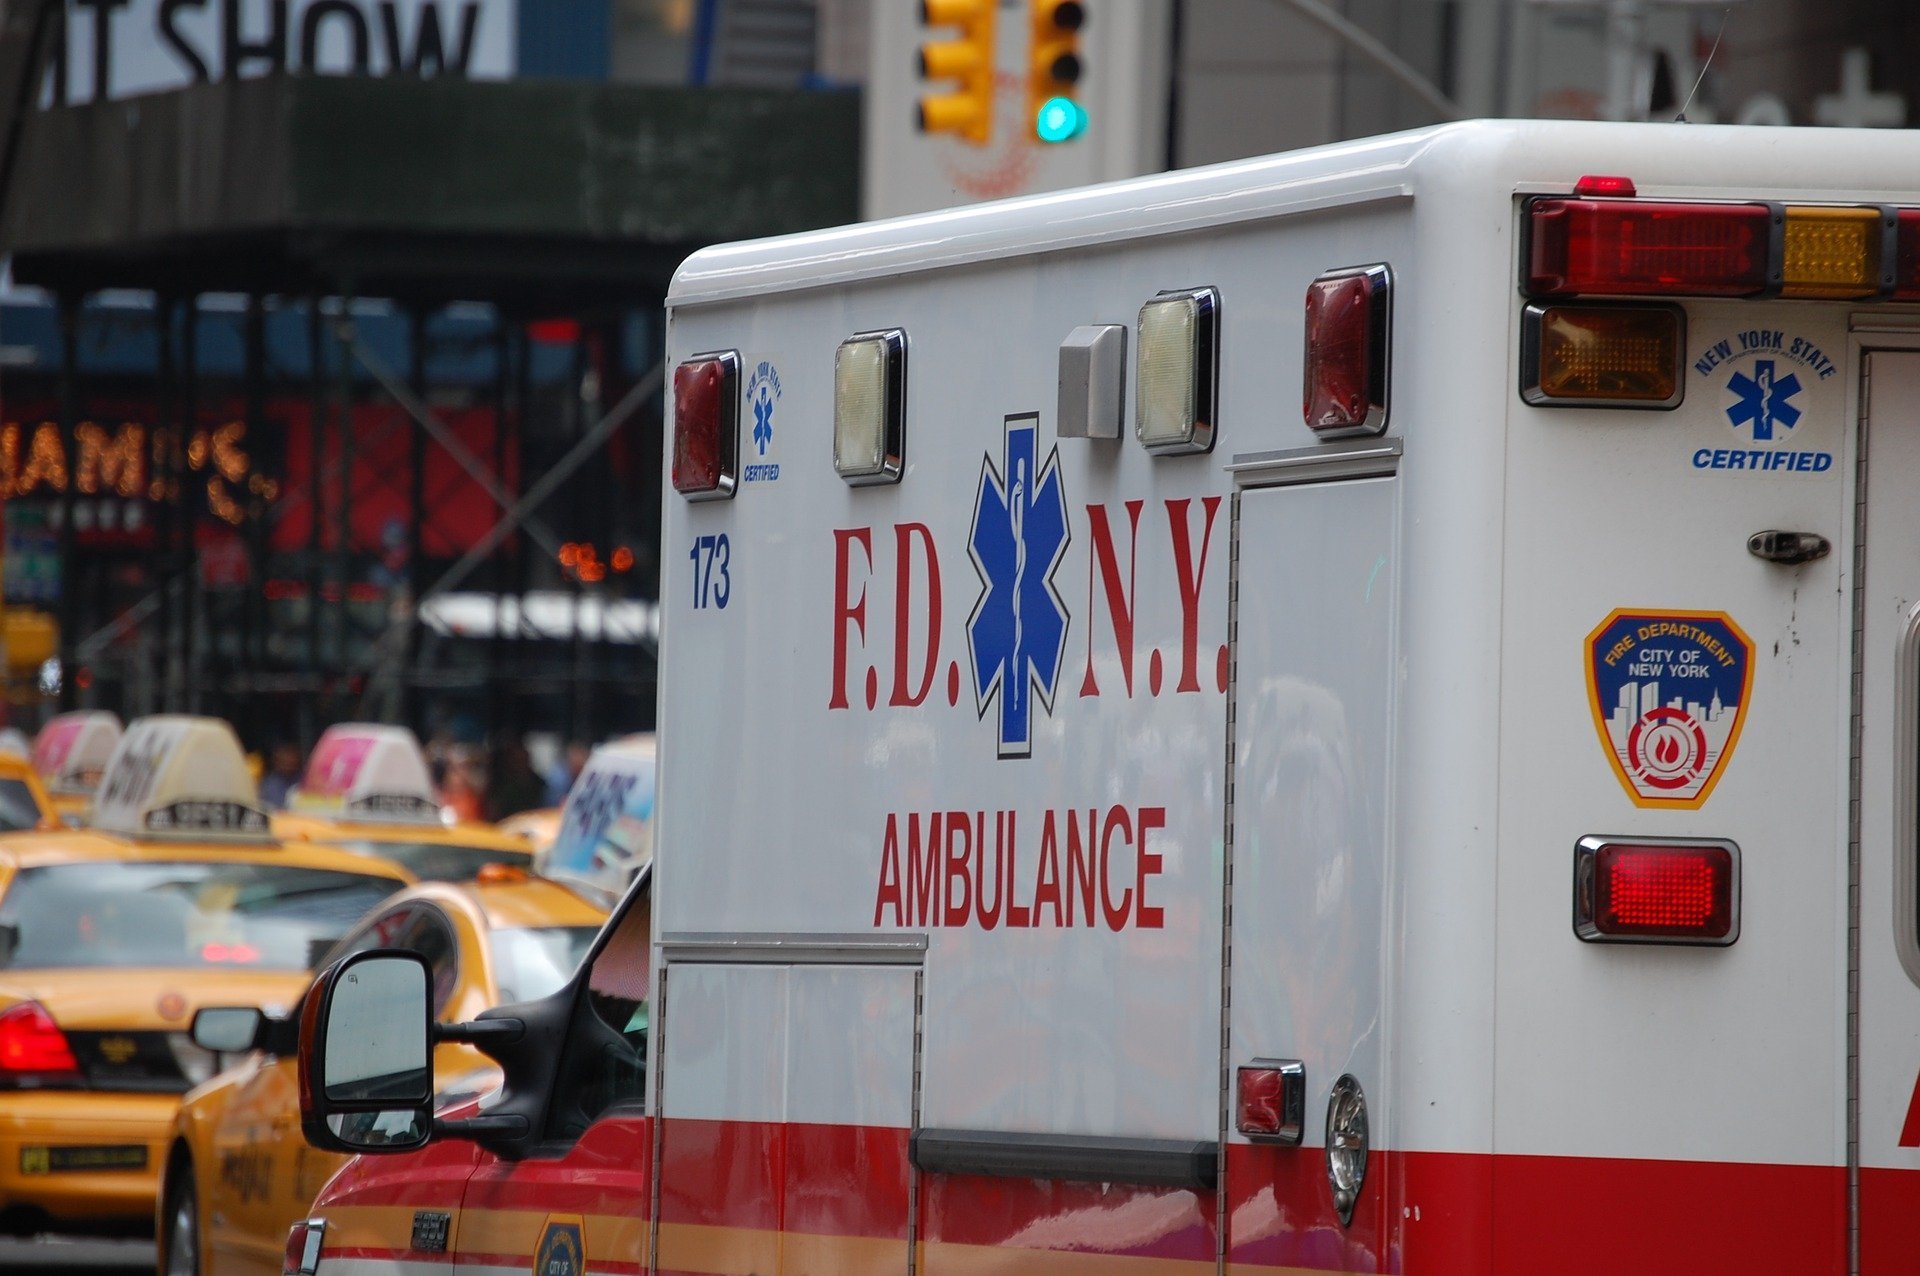 Ambulancia en trafico. | Fuente: alanbatt / Pixabay